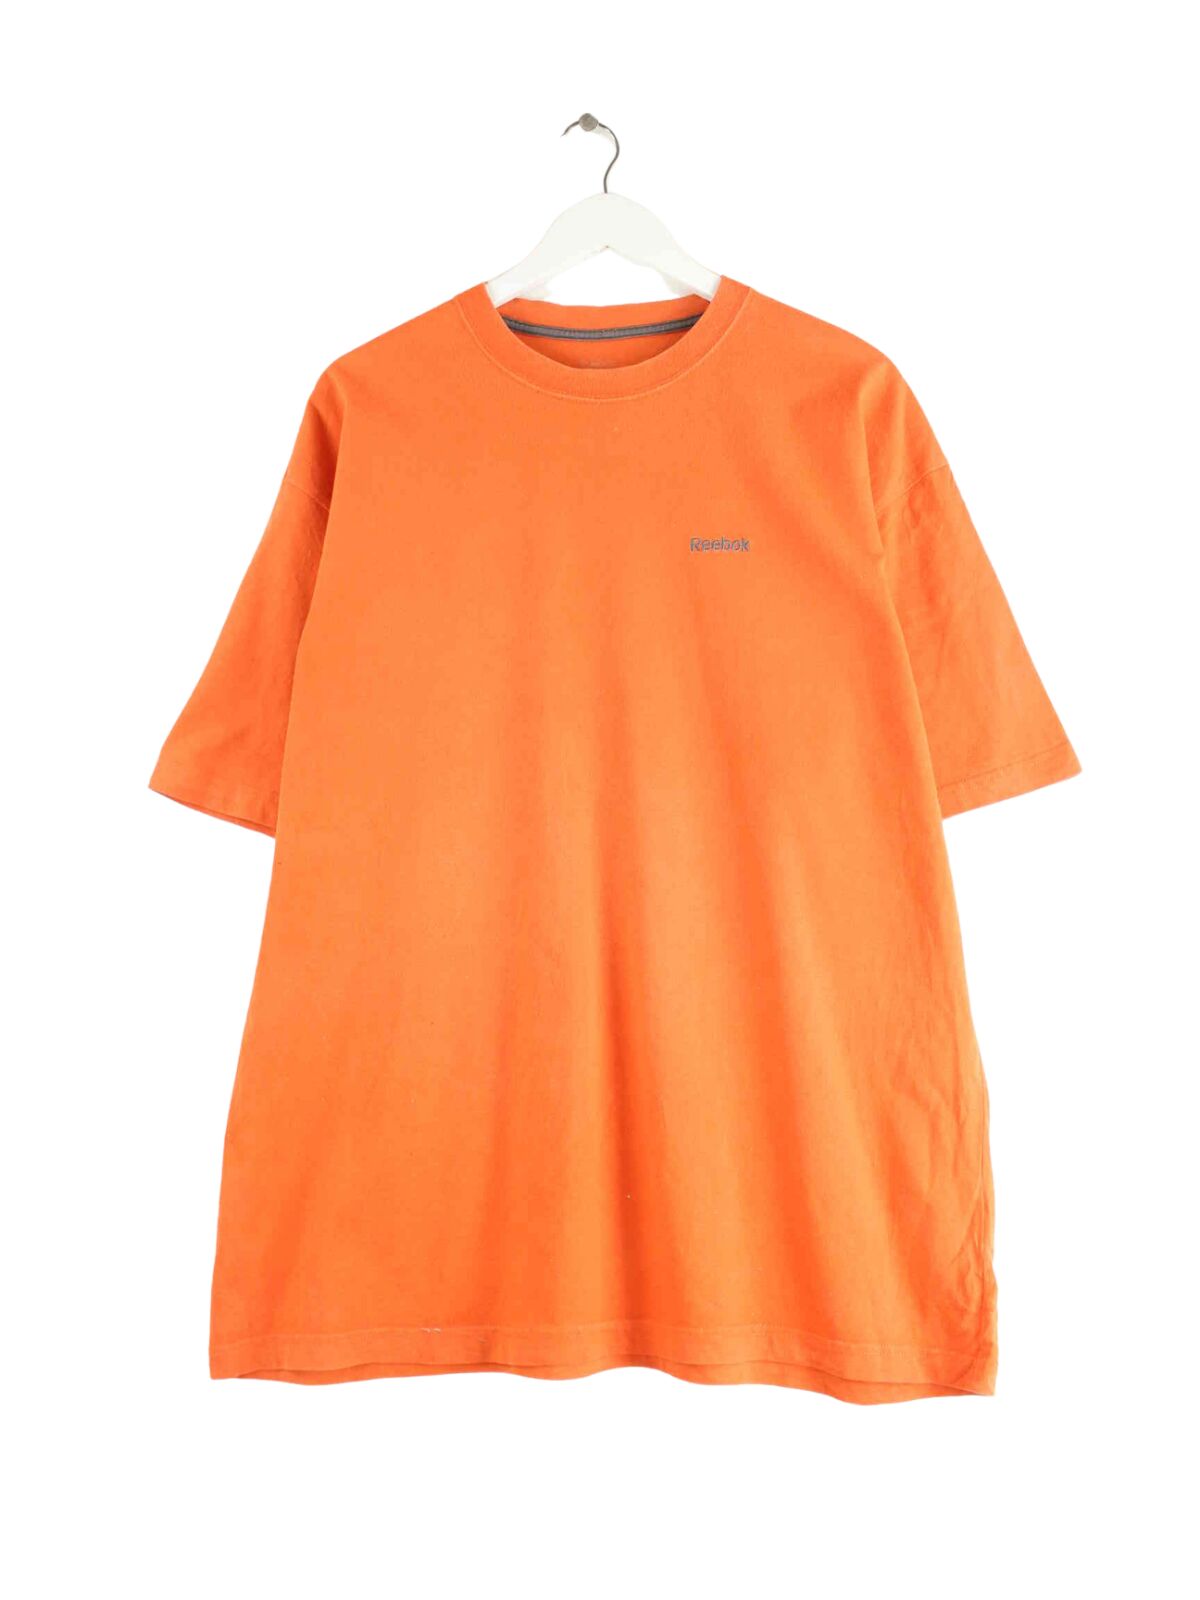 Reebok Basic T-Shirt Orange XXL (front image)